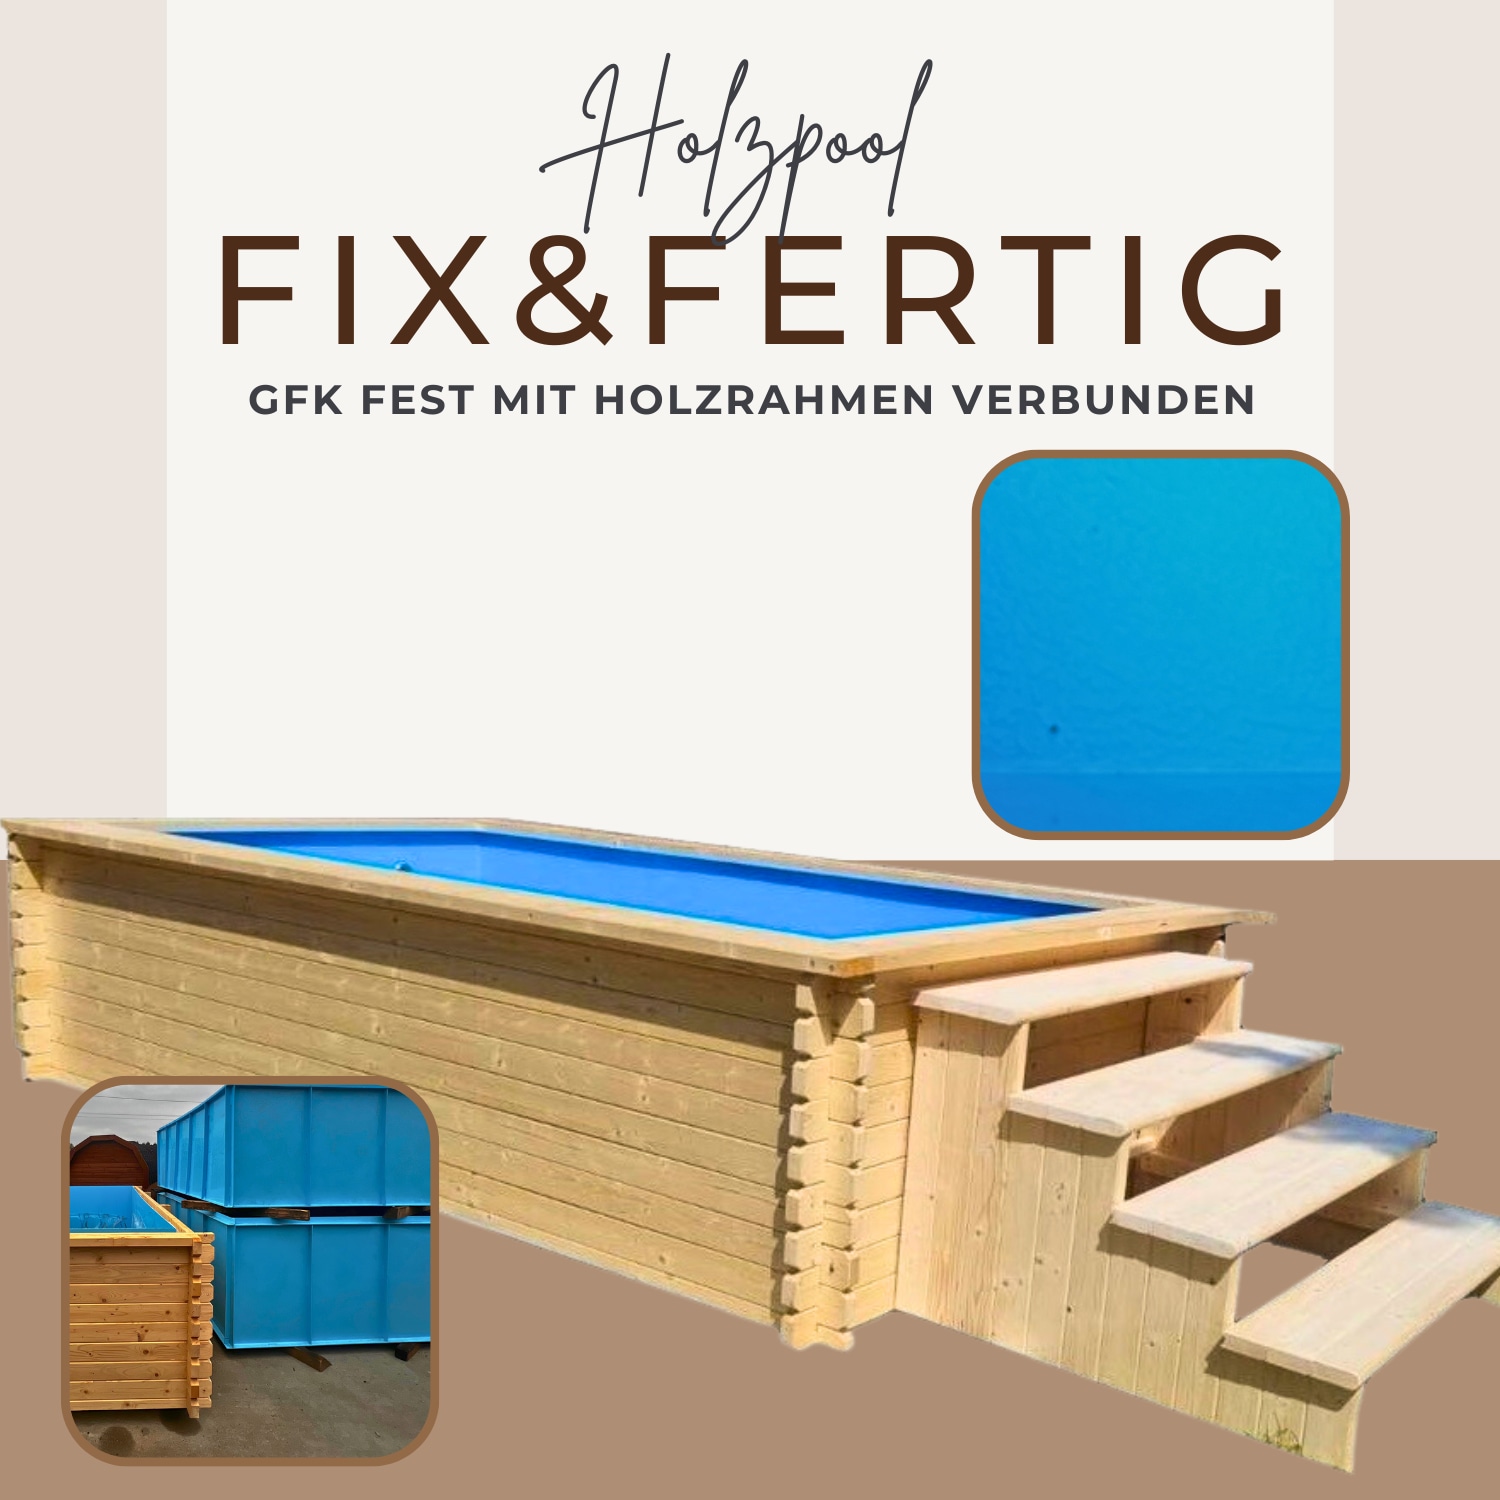 EDEN Holzmanufaktur Rechteckpool »Fix&Fertig«, (Set, 4 tlg.), inkl. blauem Einsatz, Dämmung, Einstiegstreppe & -Leiter, Wasserablauf